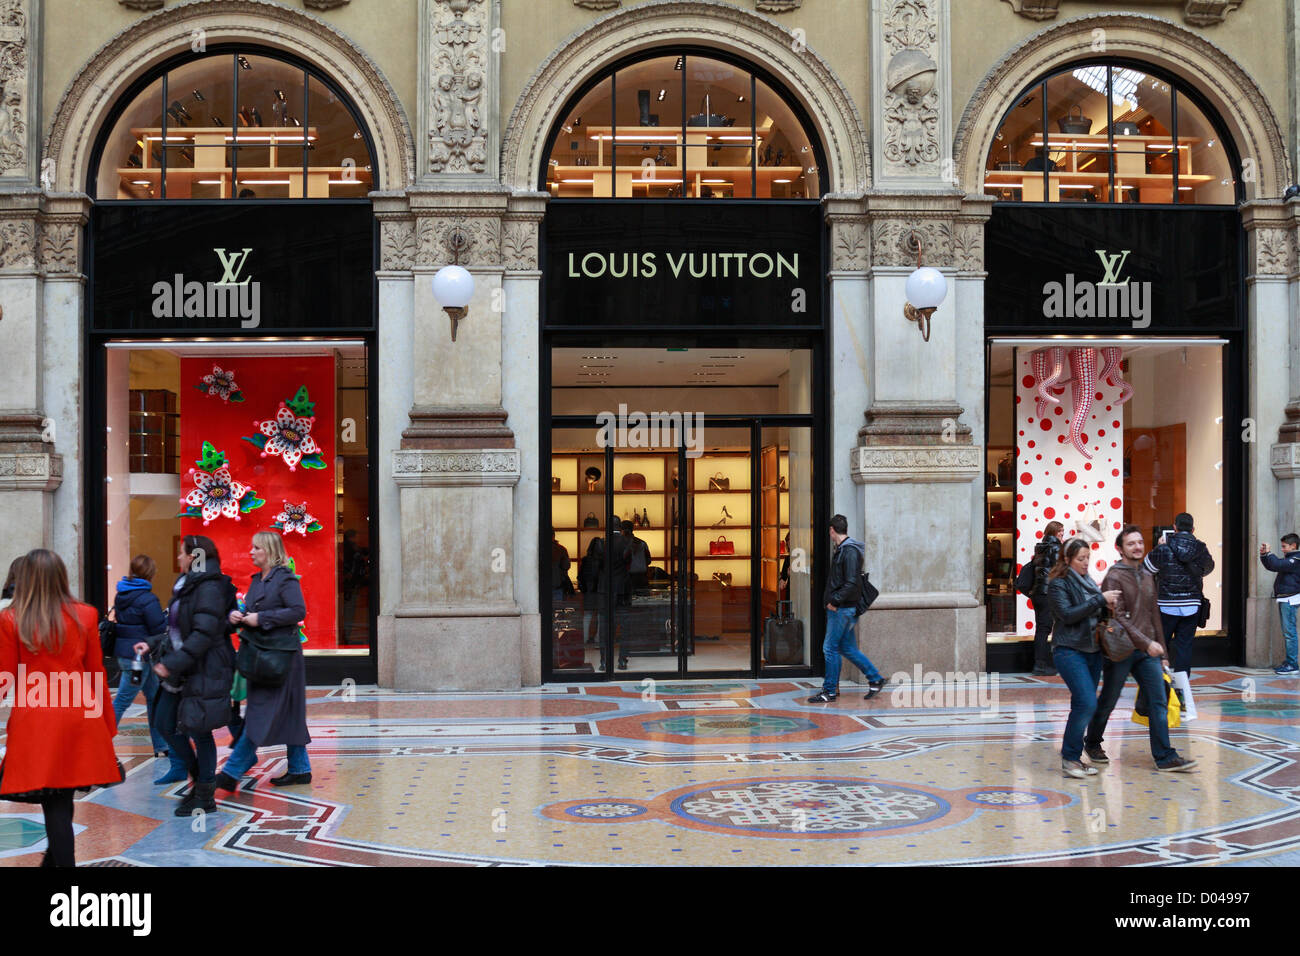 Louis Vuitton store Galleria Vittorio Emanuele II Milan Italy Europe Stock Photo, Royalty Free ...